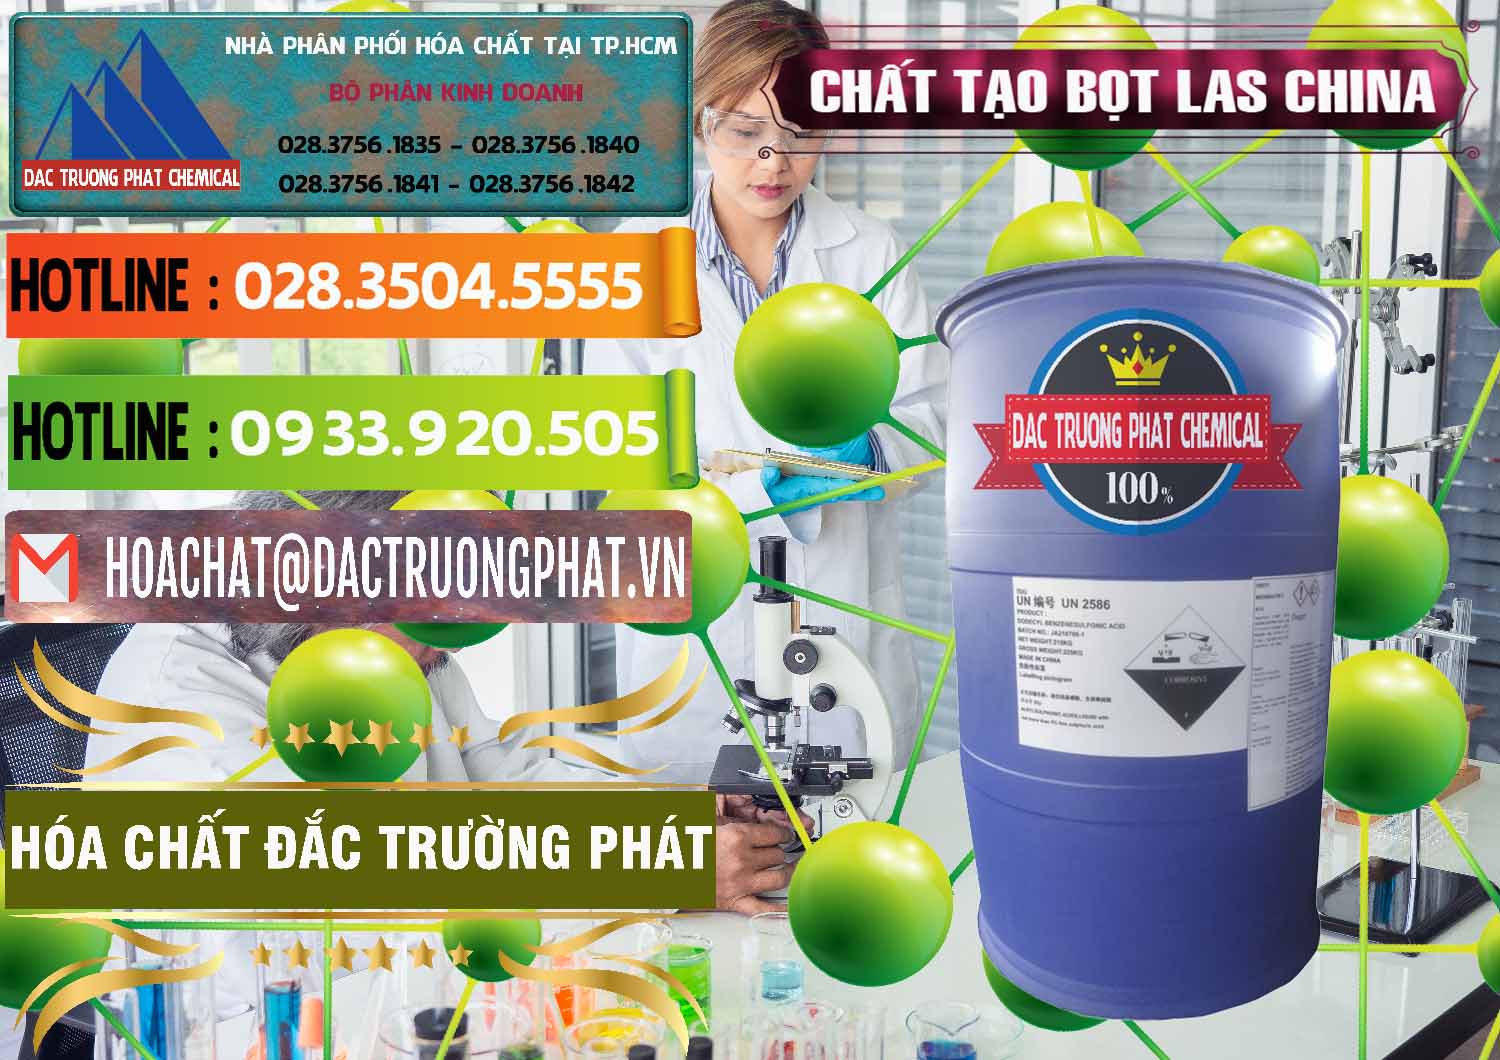 Nơi kinh doanh - bán Chất tạo bọt Las Trung Quốc China - 0451 - Nơi cung cấp và phân phối hóa chất tại TP.HCM - cungcaphoachat.com.vn